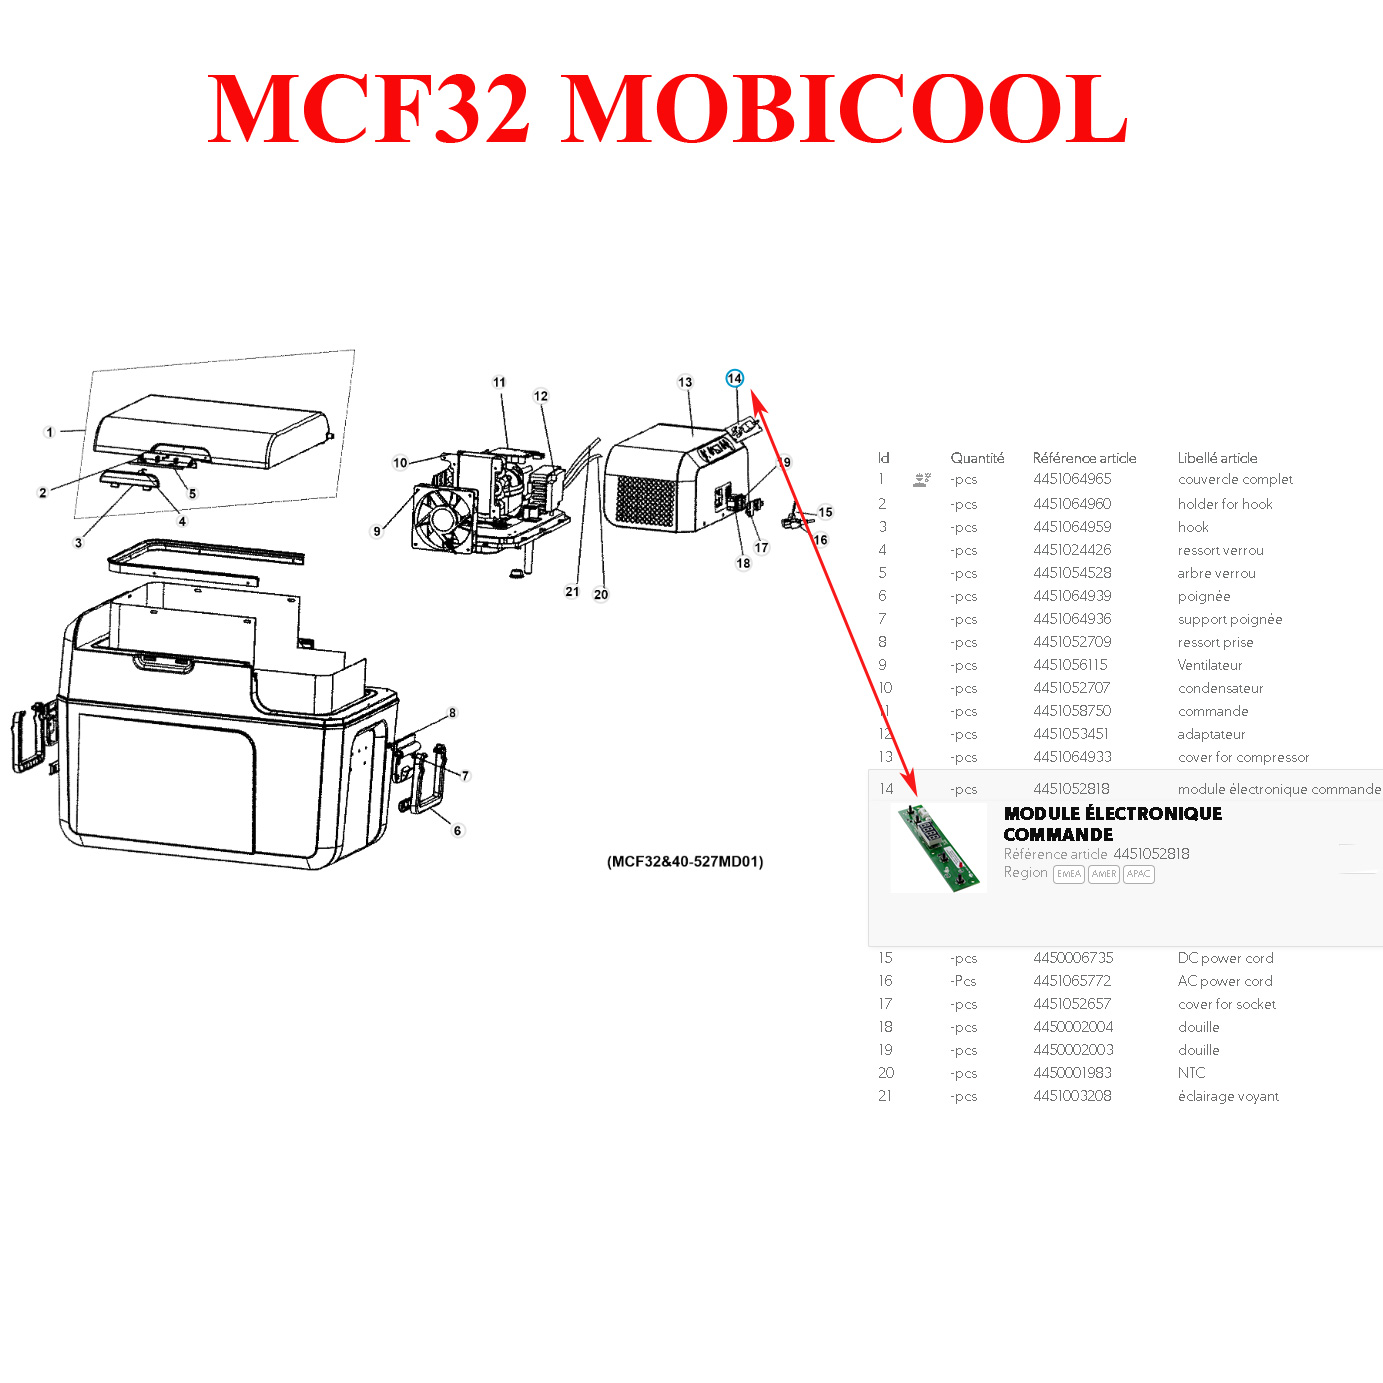 Electronique 715DISP01 de commande pour CF16, CF26, CC32, CC40, MCF32,  MCF40, MCF60, FR40AC, FR43AC, FR60 par Dometic ou Mobicool